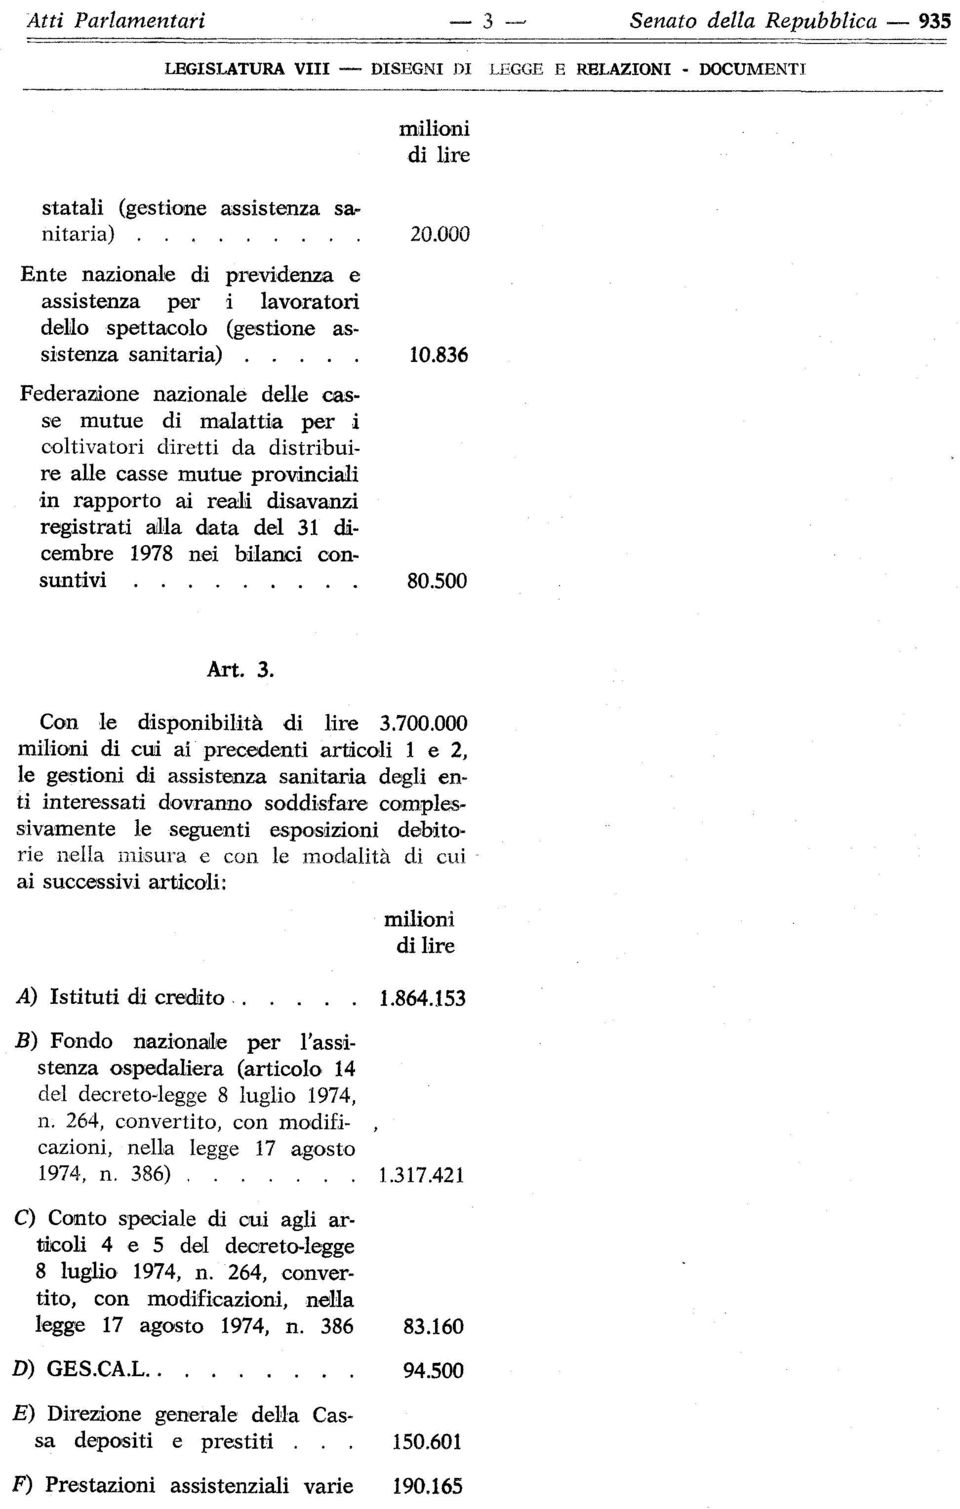 836 Federazione nazionale delle casse mutue di malattia per i coltivatori diretti da distribuire alle casse mutue provinciali in rapporto ai reali disavanzi registrati alla data del 31 dicembre 1978